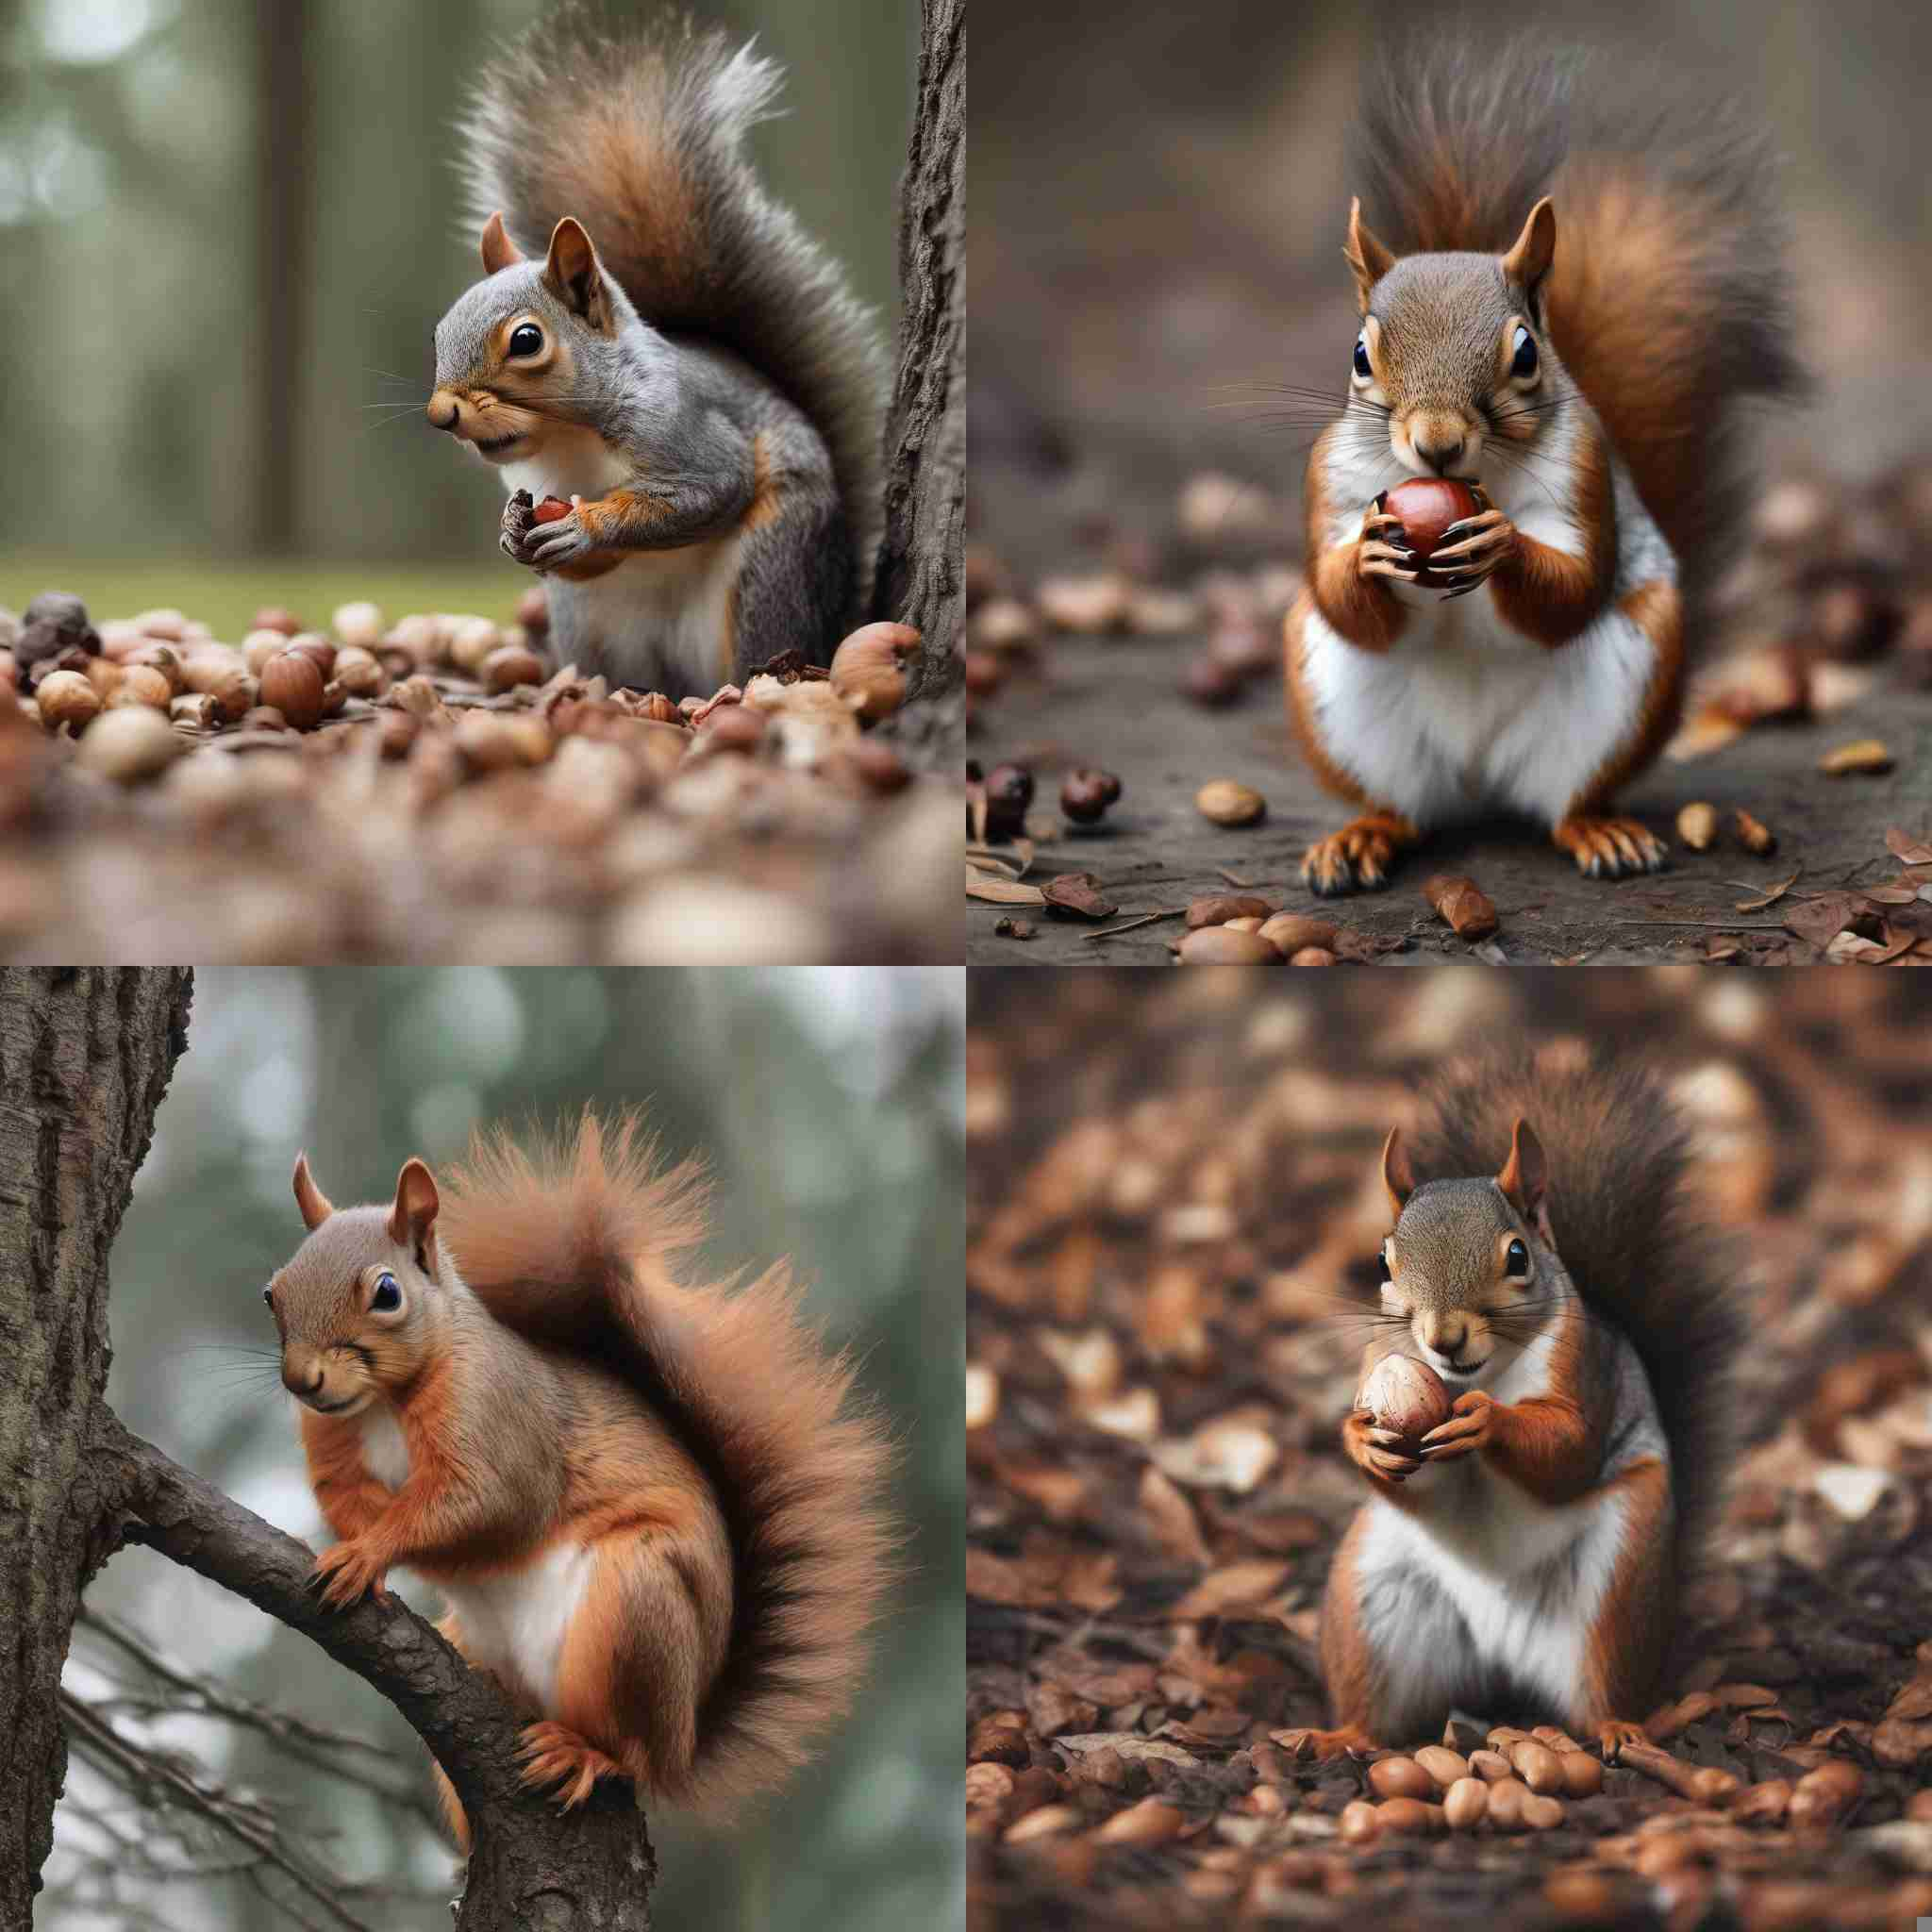 A squirrel hiding a nut